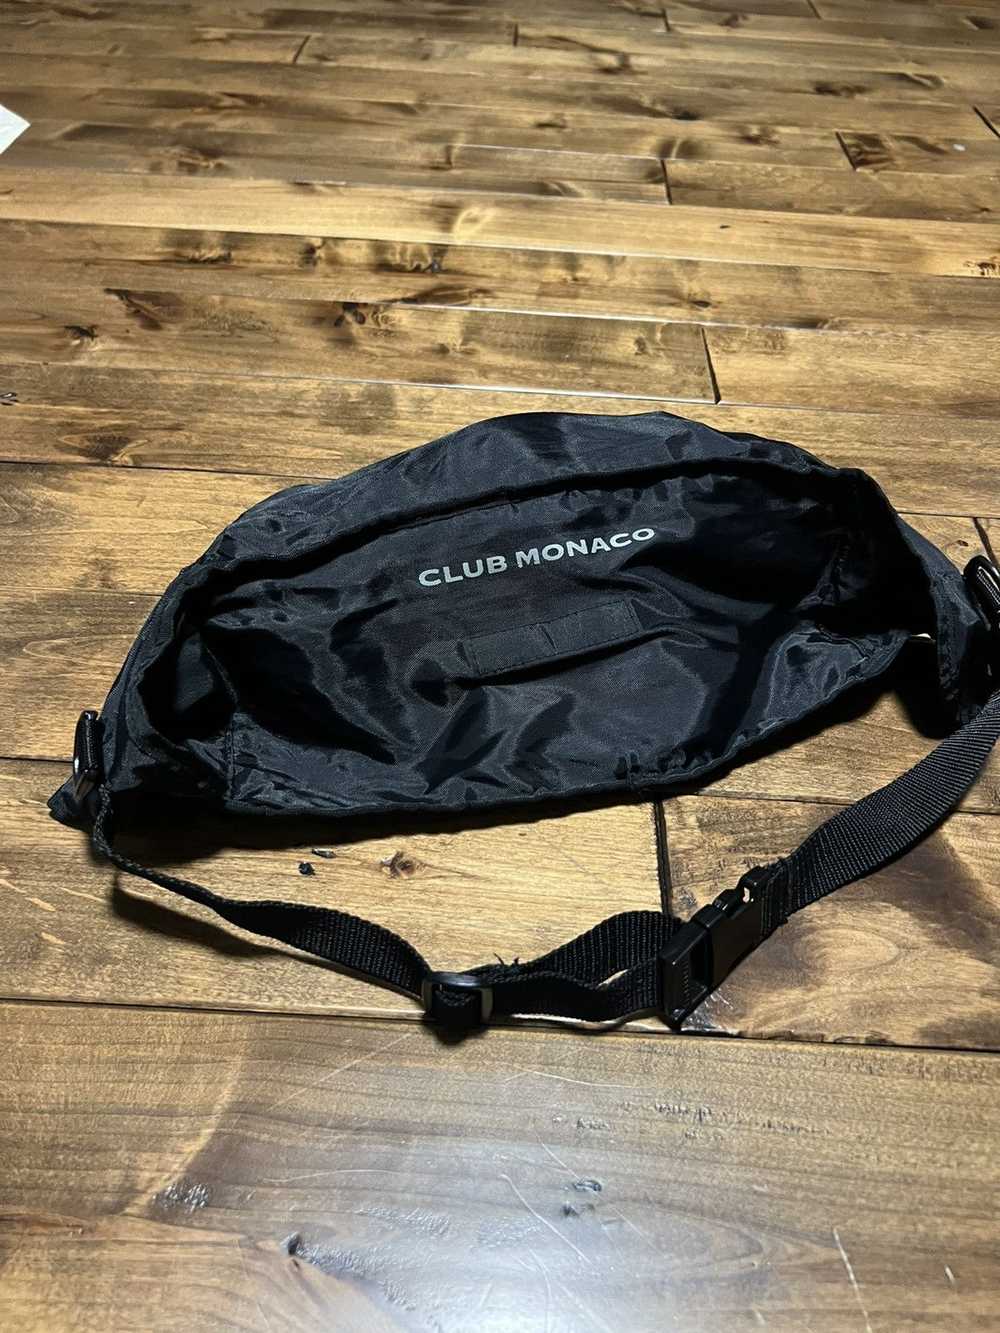 Club Monaco Club Monaco backpack multi purpose bag - image 12